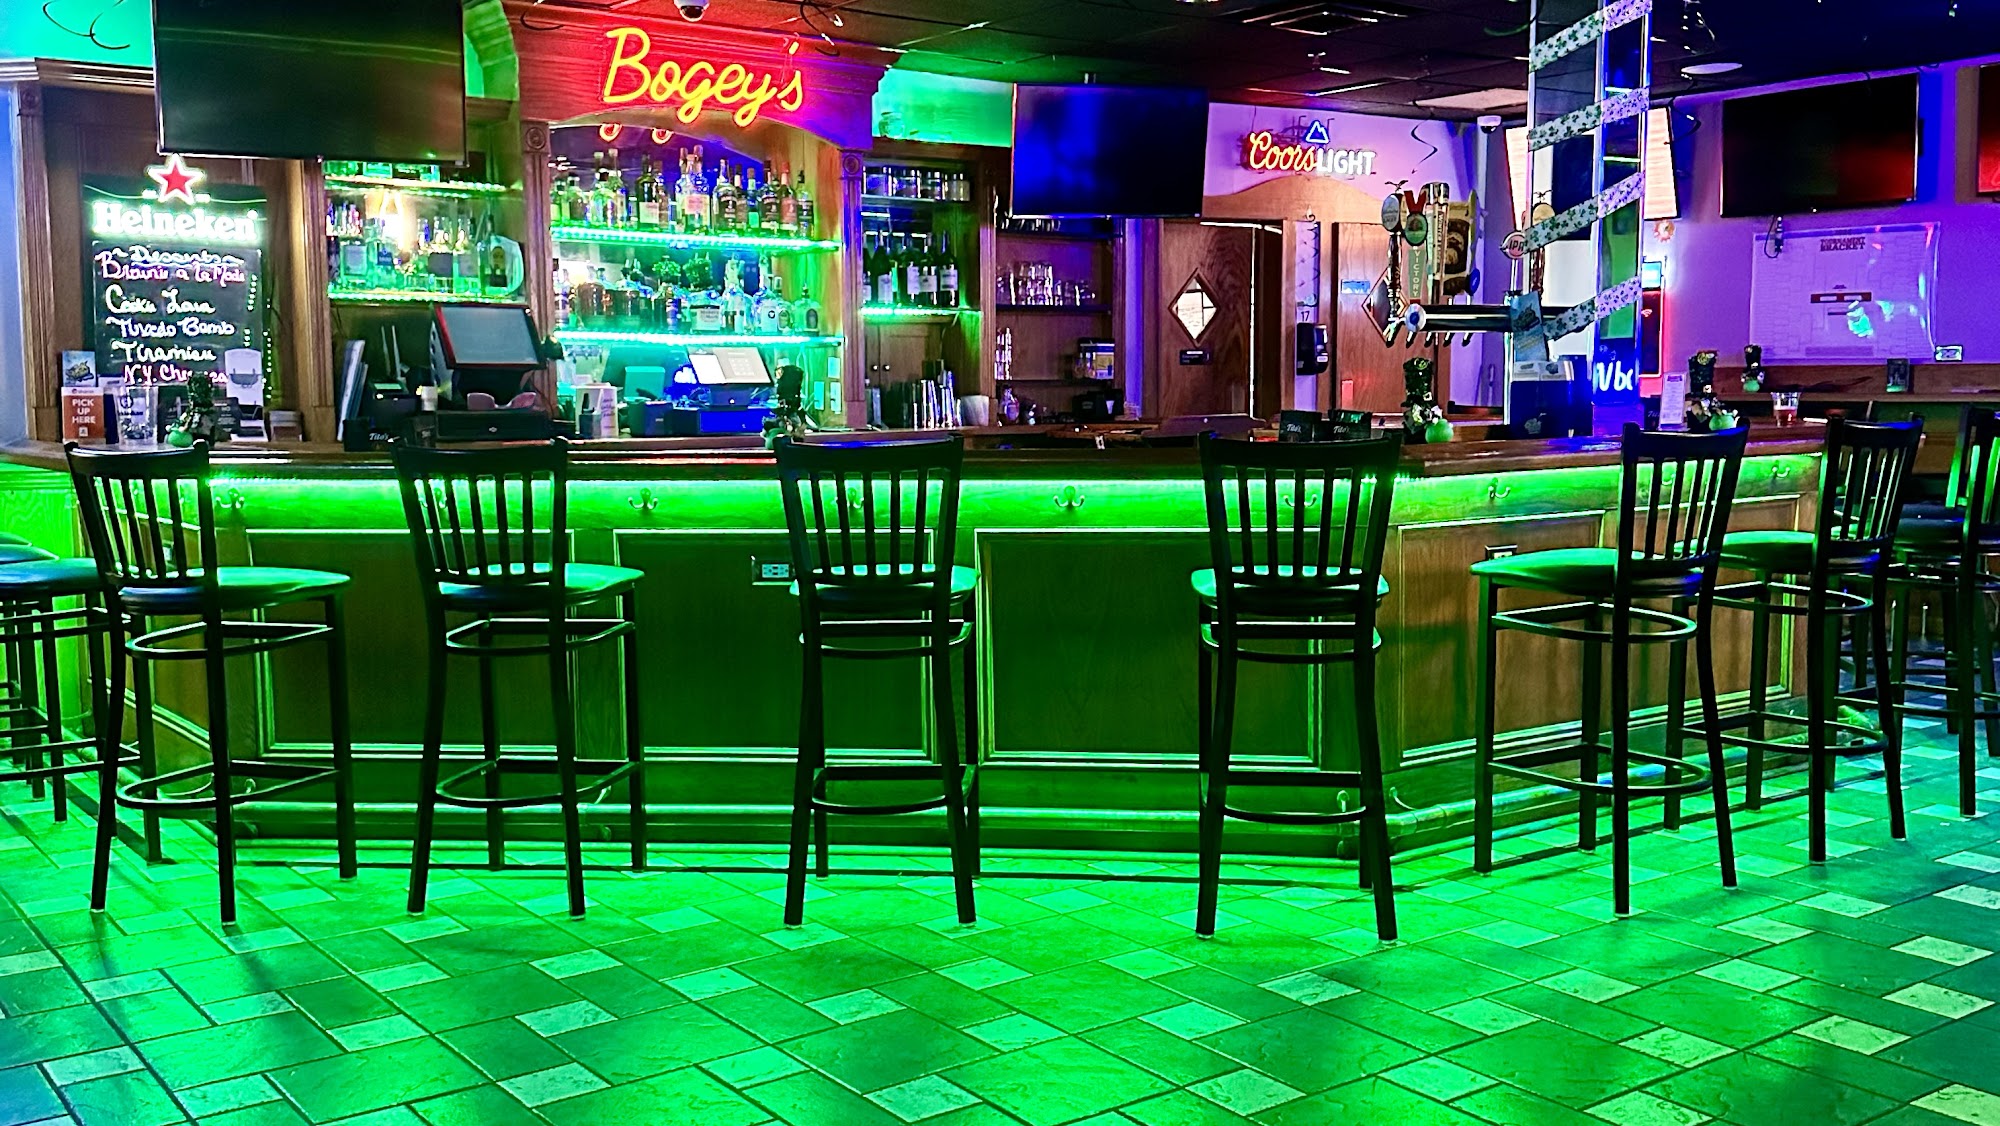 Bogey's Bar & Grill